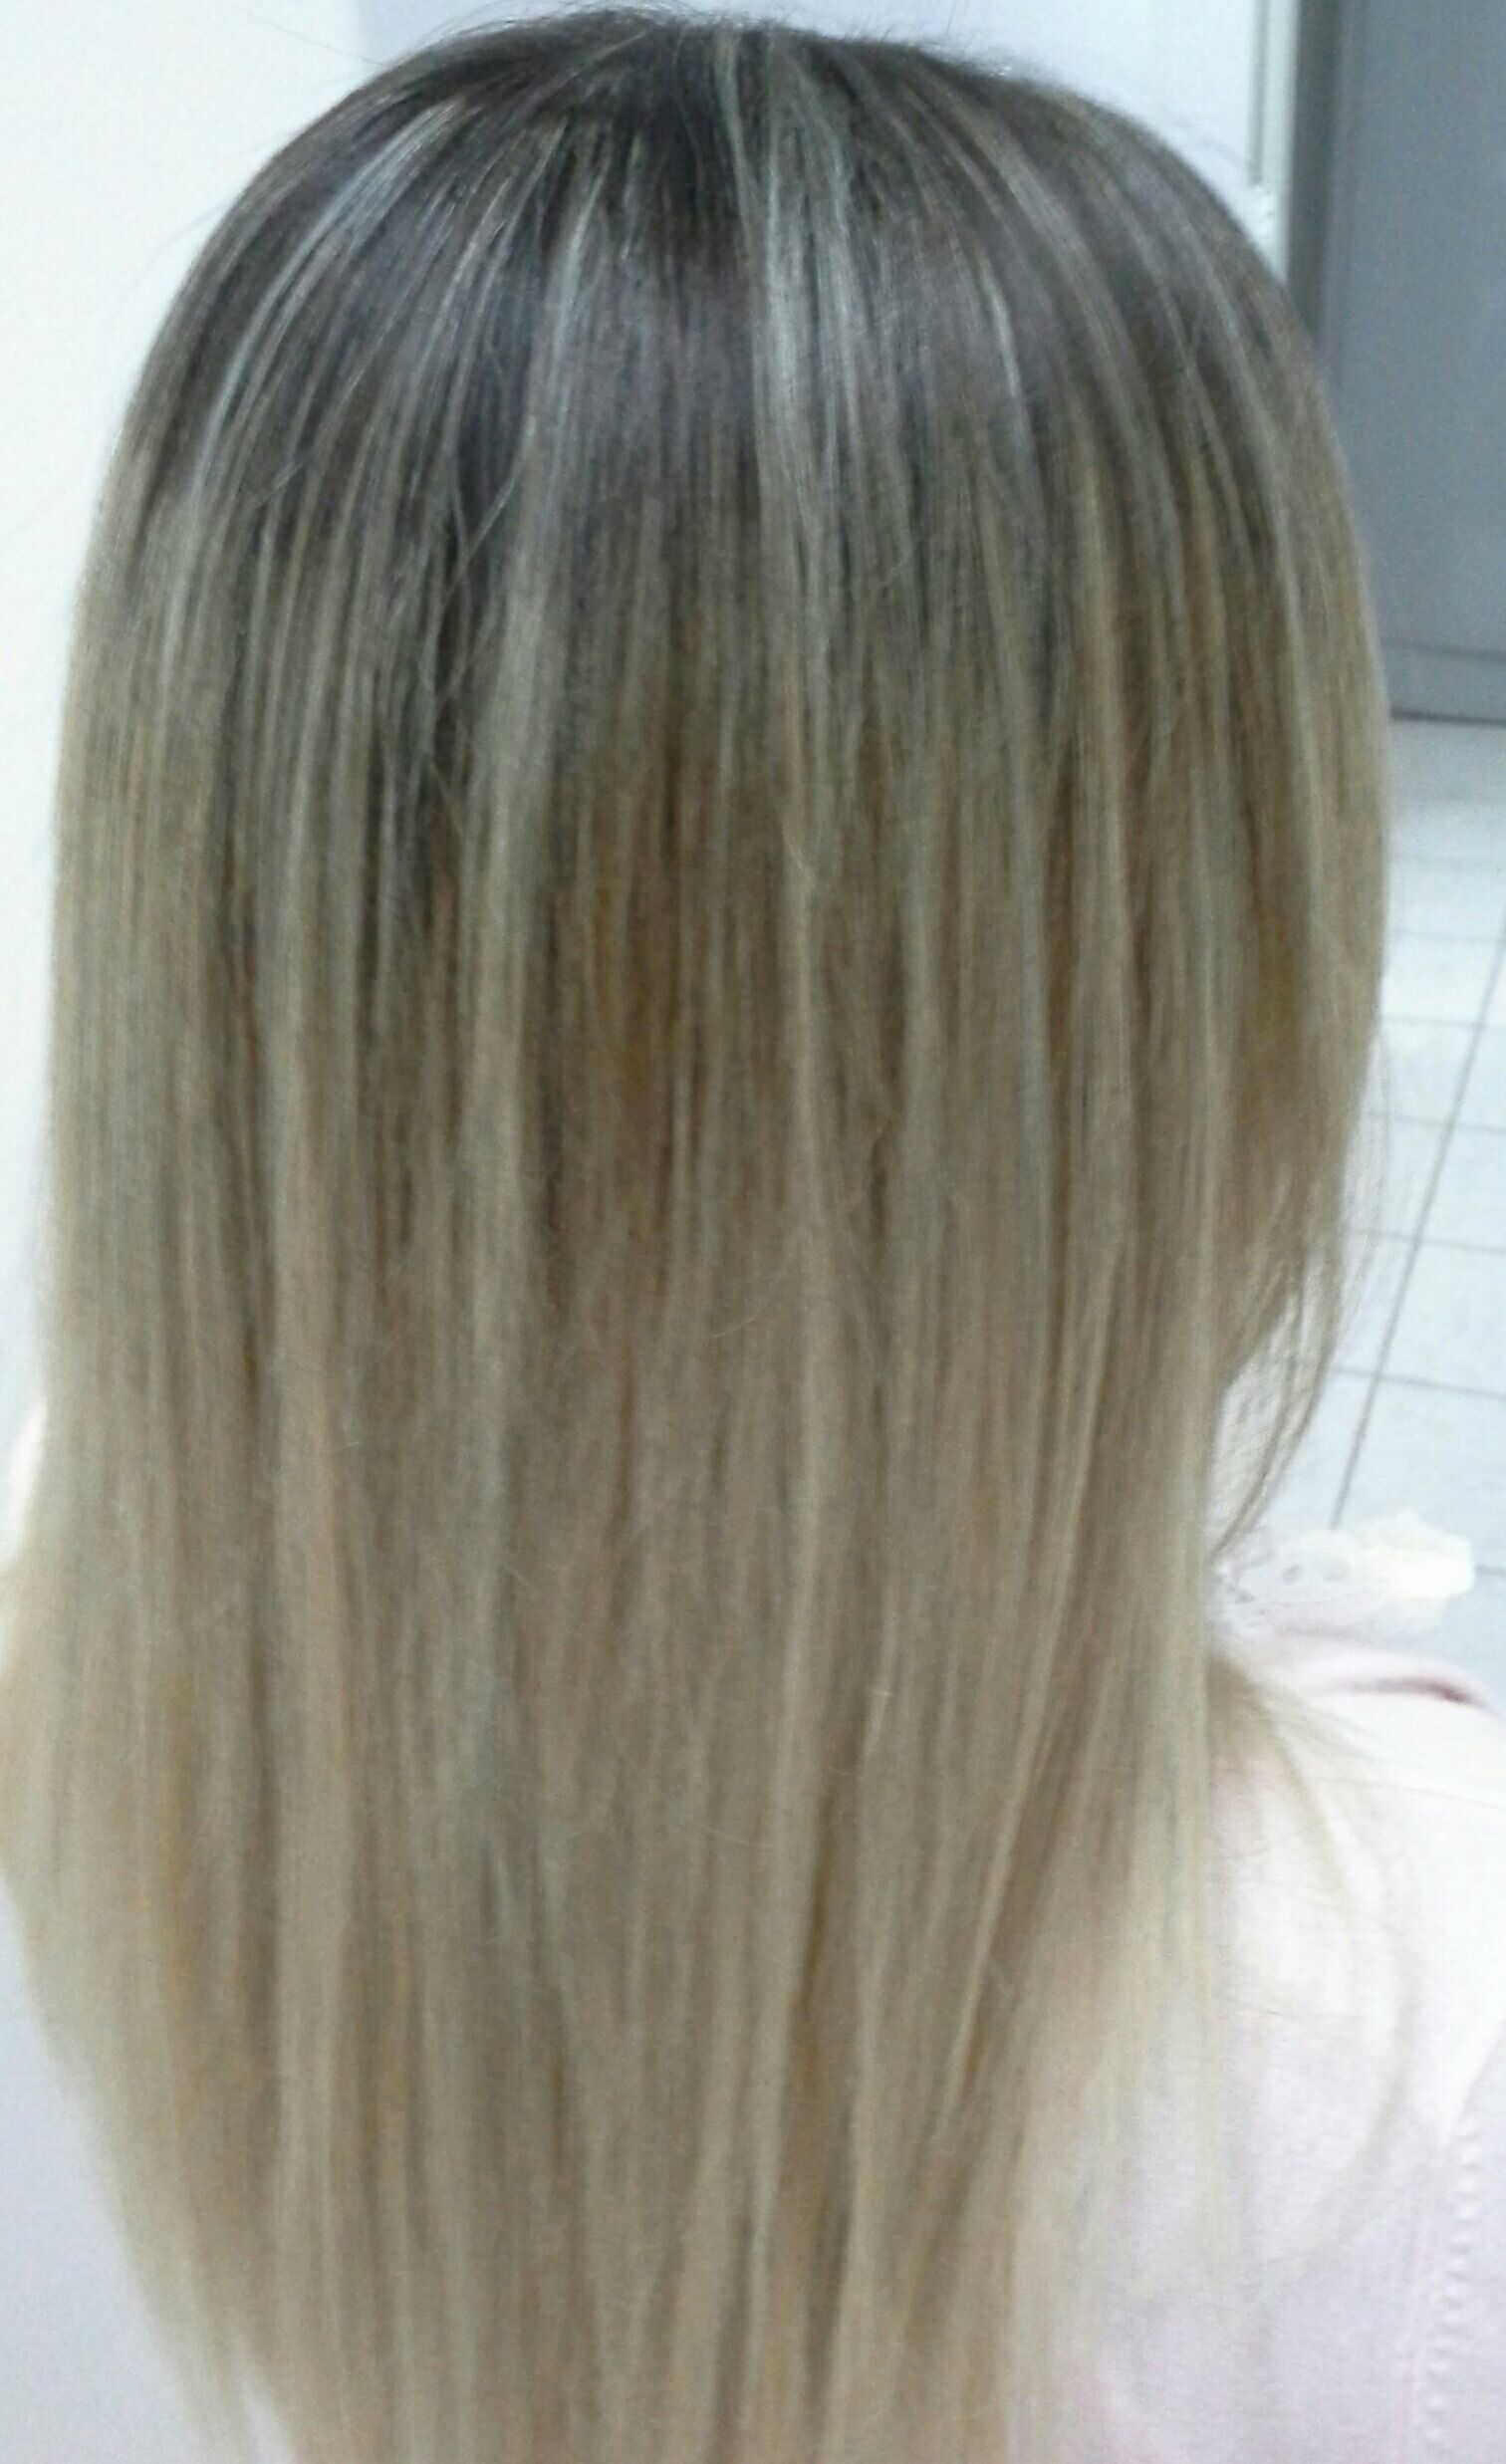 Correção de cor  , ombre hair 
Profissional  vera lucia Lopes cabelo stylist / visagista cabeleireiro(a)